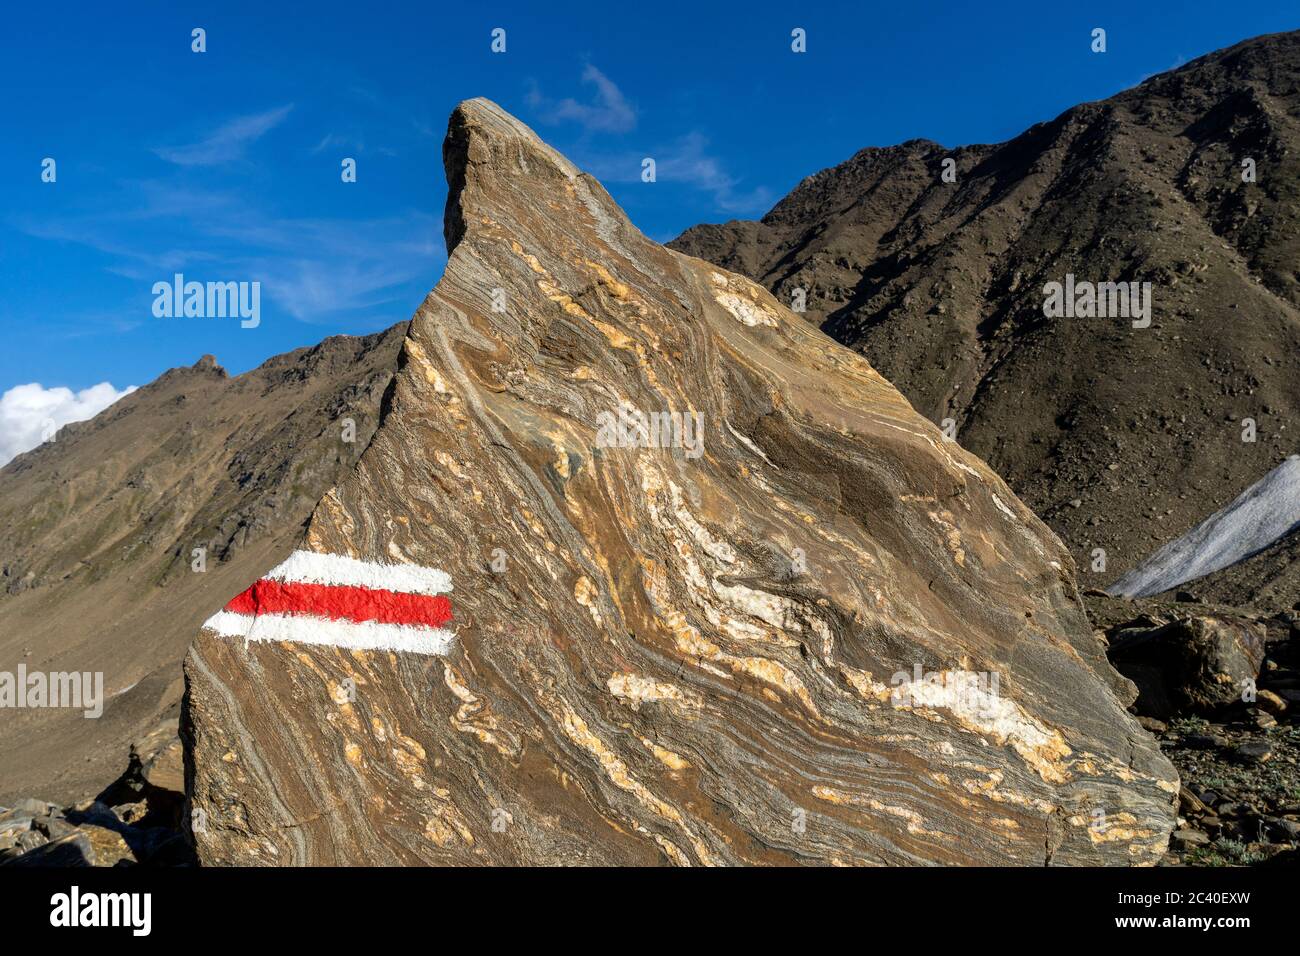 Farbmarkierung eines Bergwanderwegs auf einem gebänderten Felsblock im Val Corno, Kanton Tessin. Stock Photo